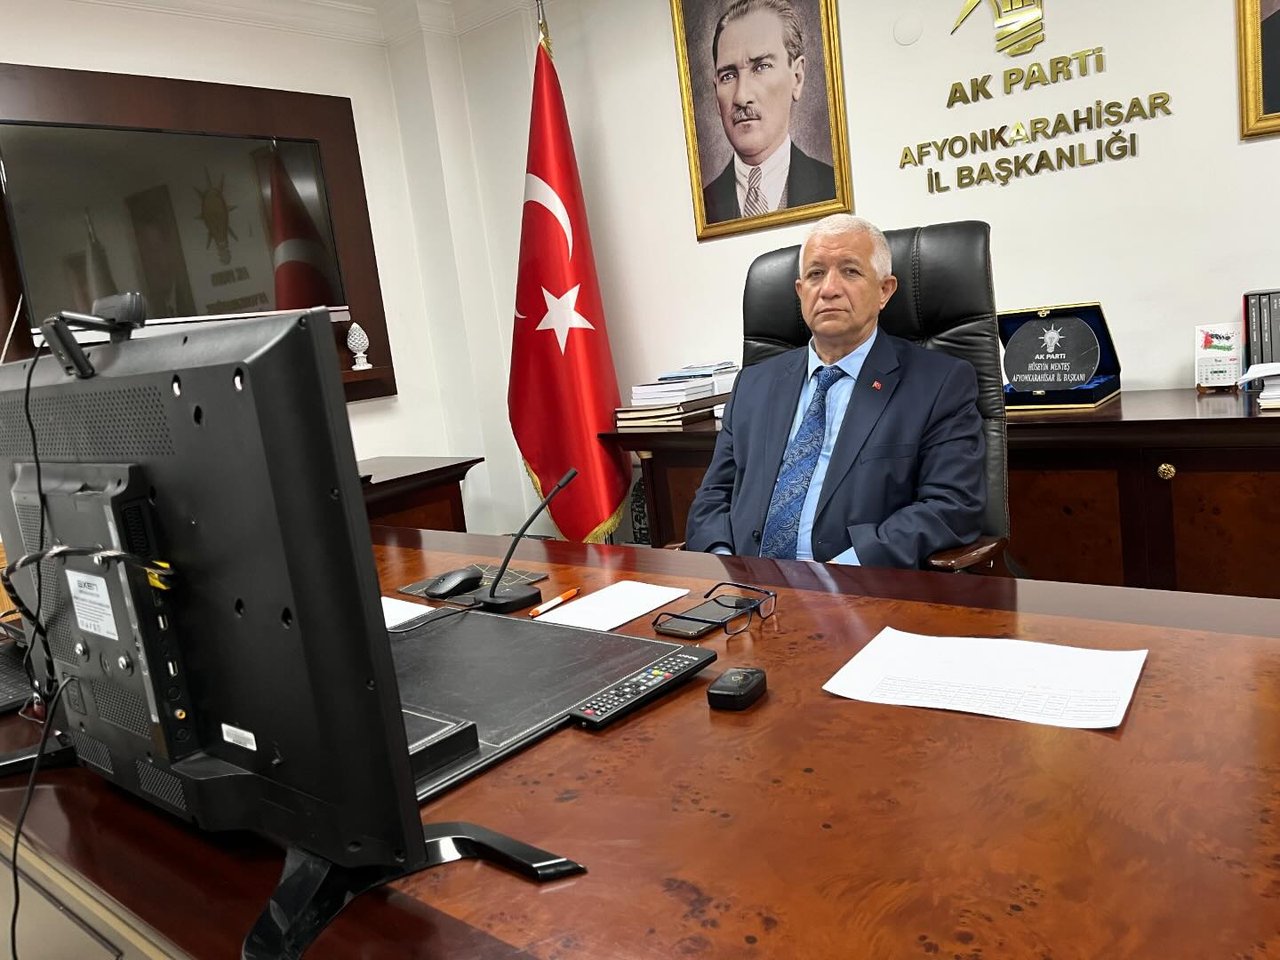 Afyonkarahisar'da AK Parti İl Başkanı Hüseyin Menteş, video konferans ile toplantıya katıldı.